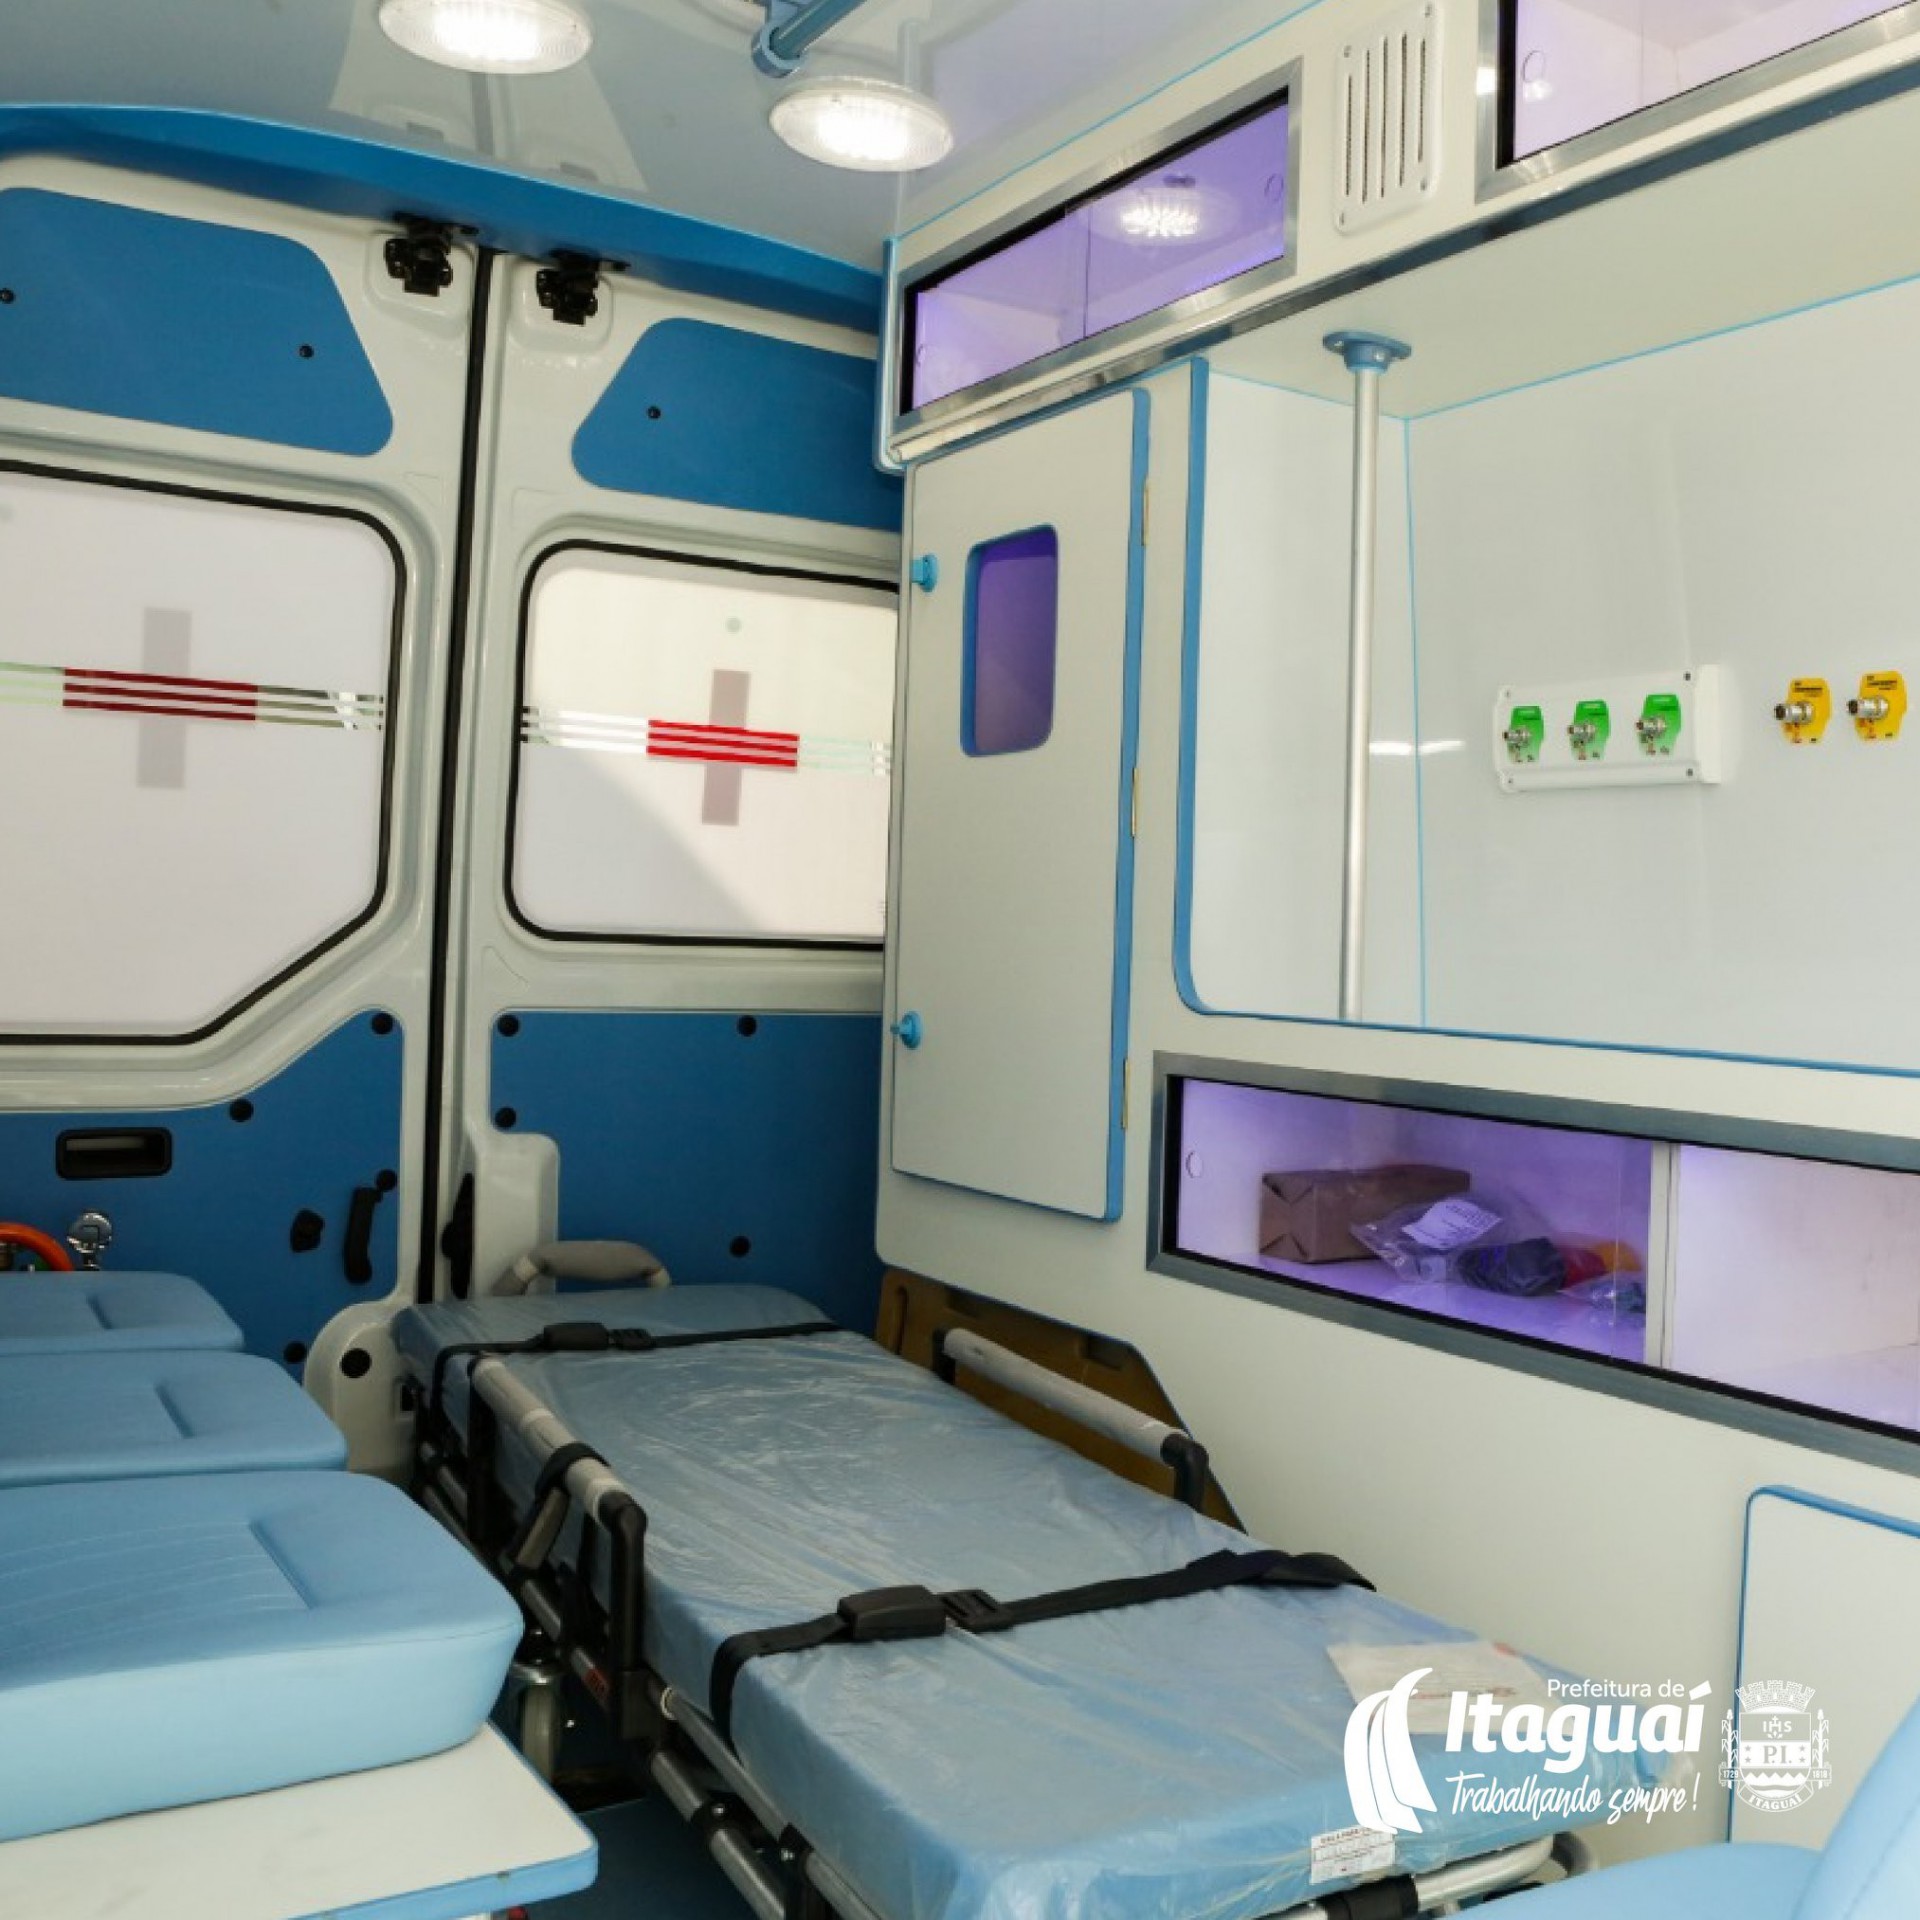 Prefeitura publicou fotos de uma nova ambulância a serviço da saúde municipal, mas não informou procedência nem quais atendimentos está apta a realizar - Reprodução - Facebook da PMI